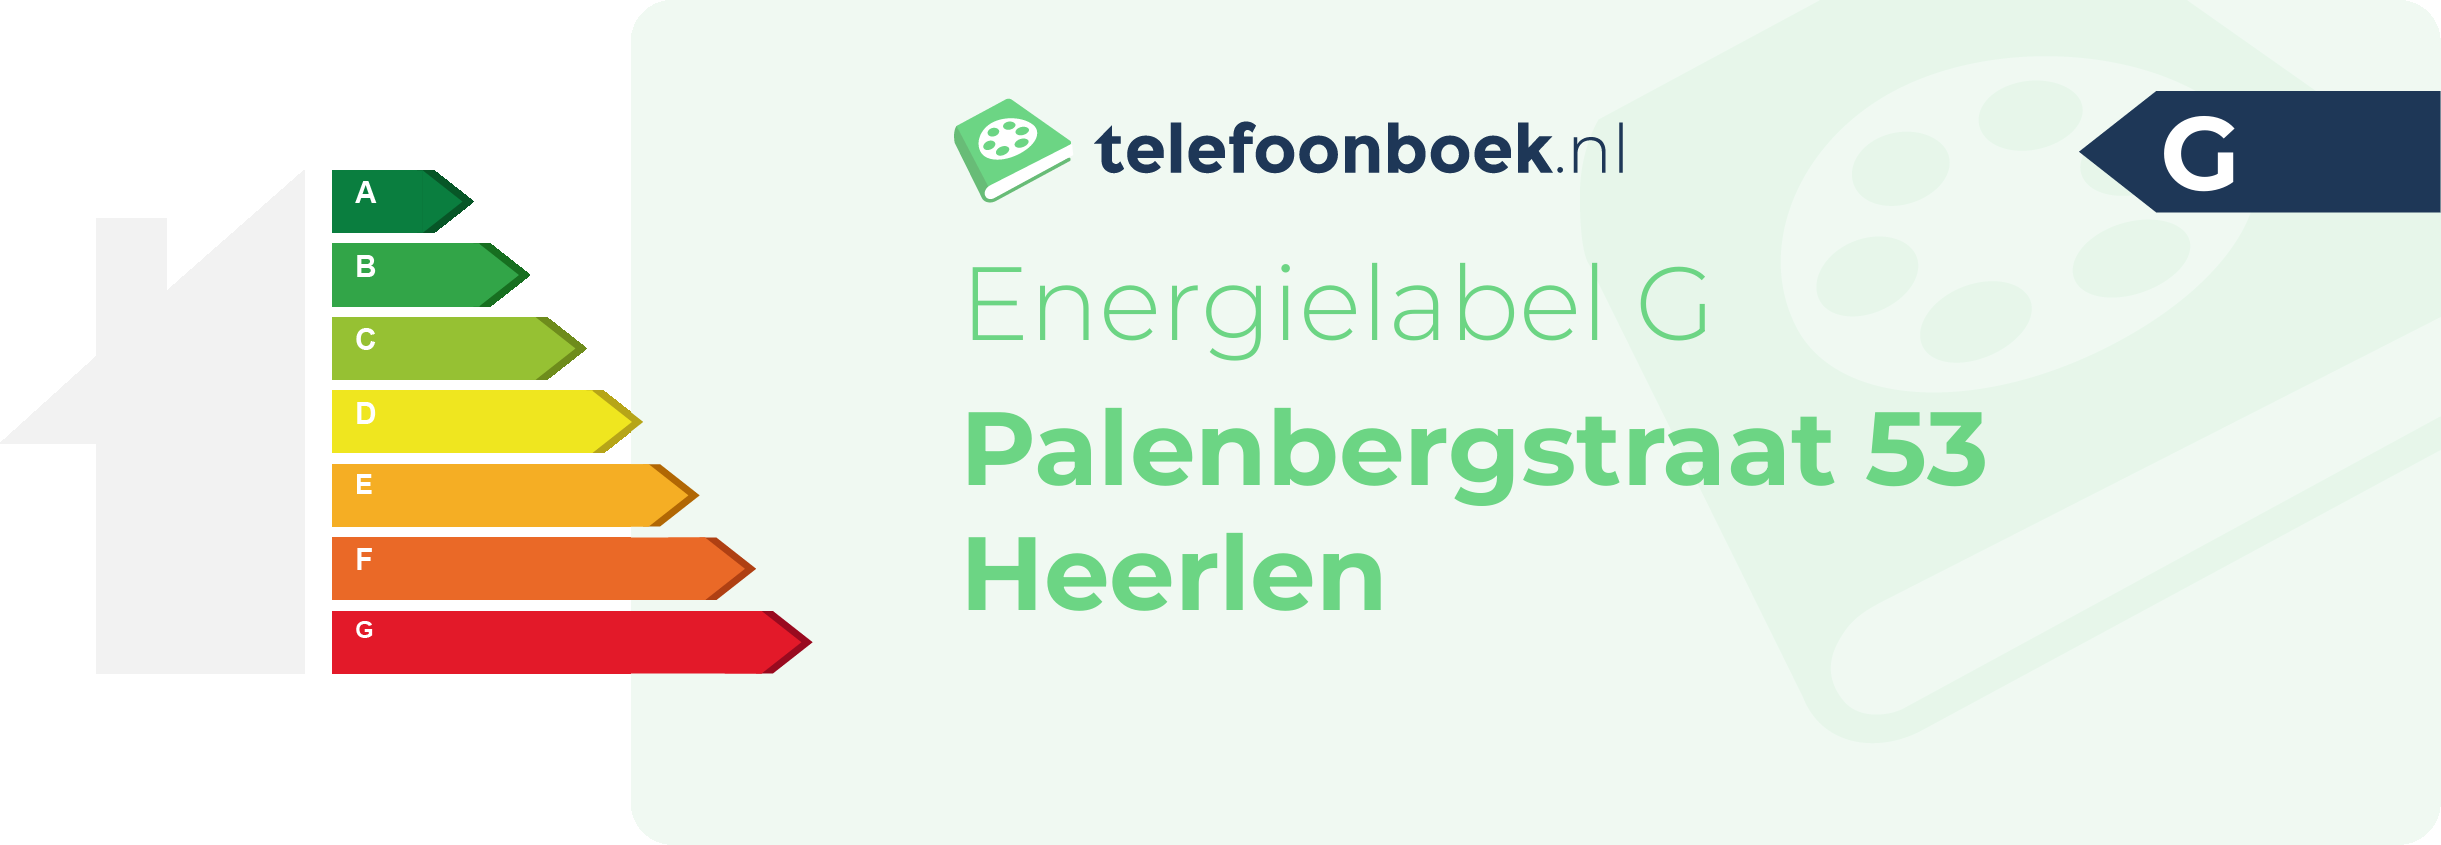 Energielabel Palenbergstraat 53 Heerlen